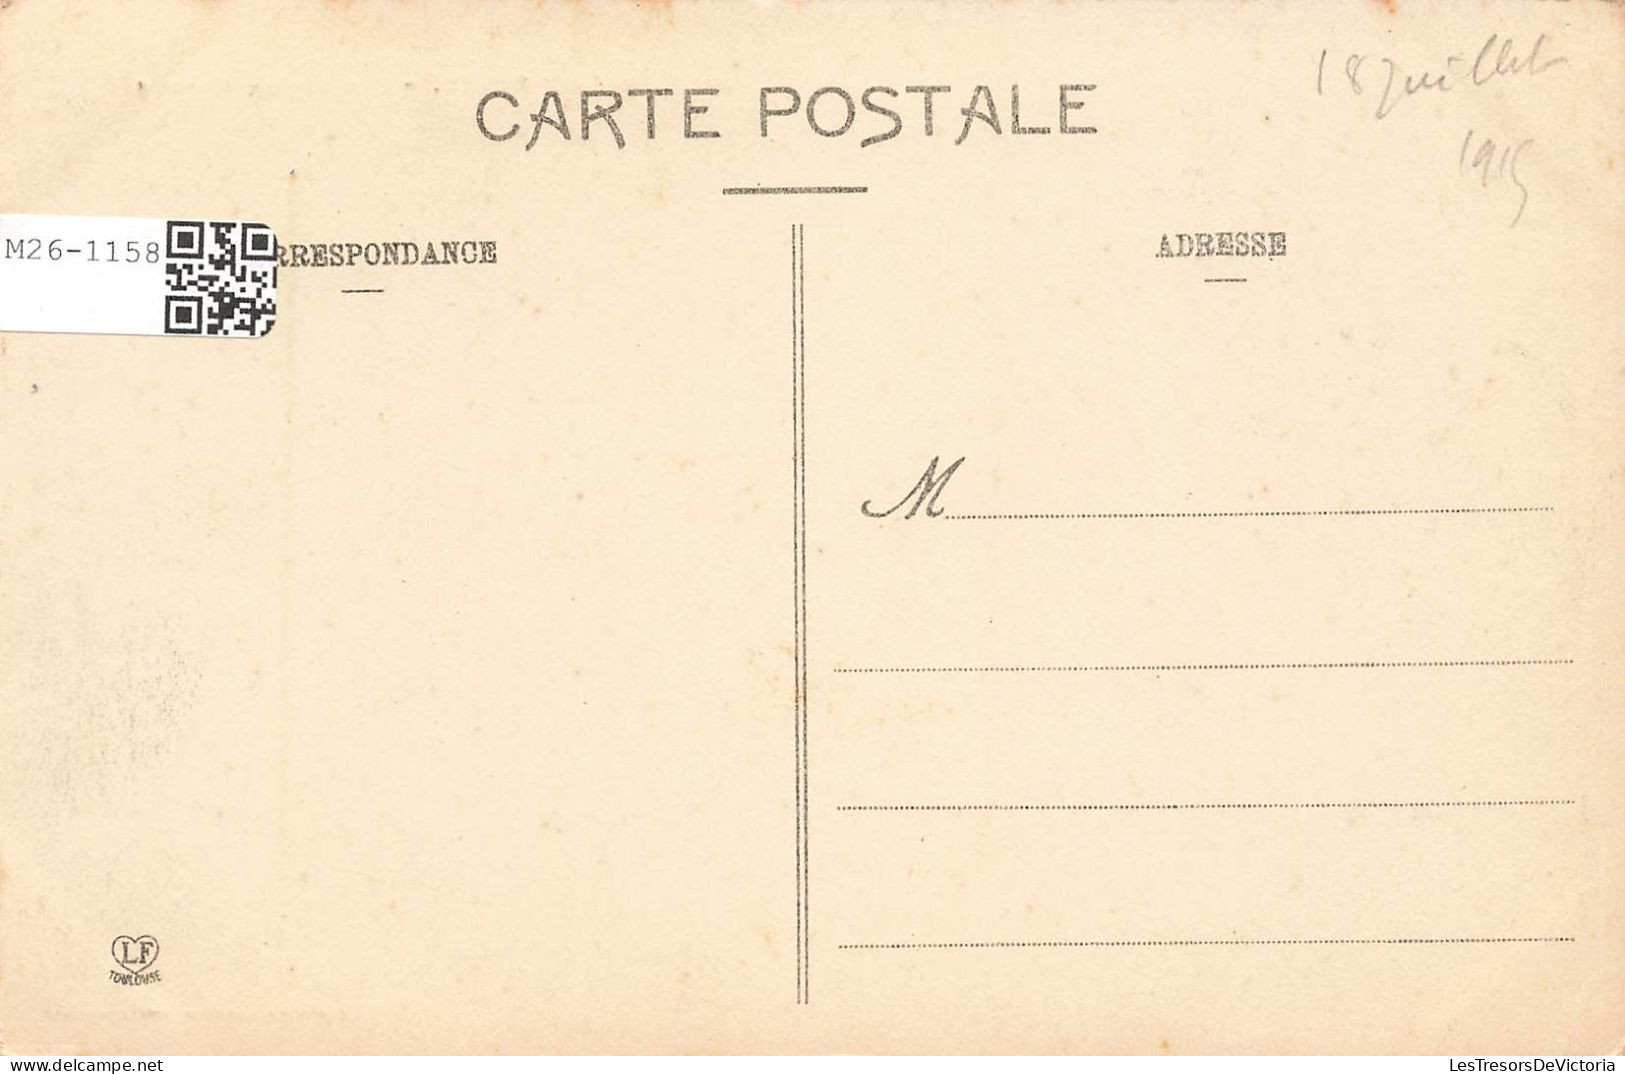 FRANCE - Cauterets - Cascade De Lutour - Carte Postale Ancienne - Cauterets